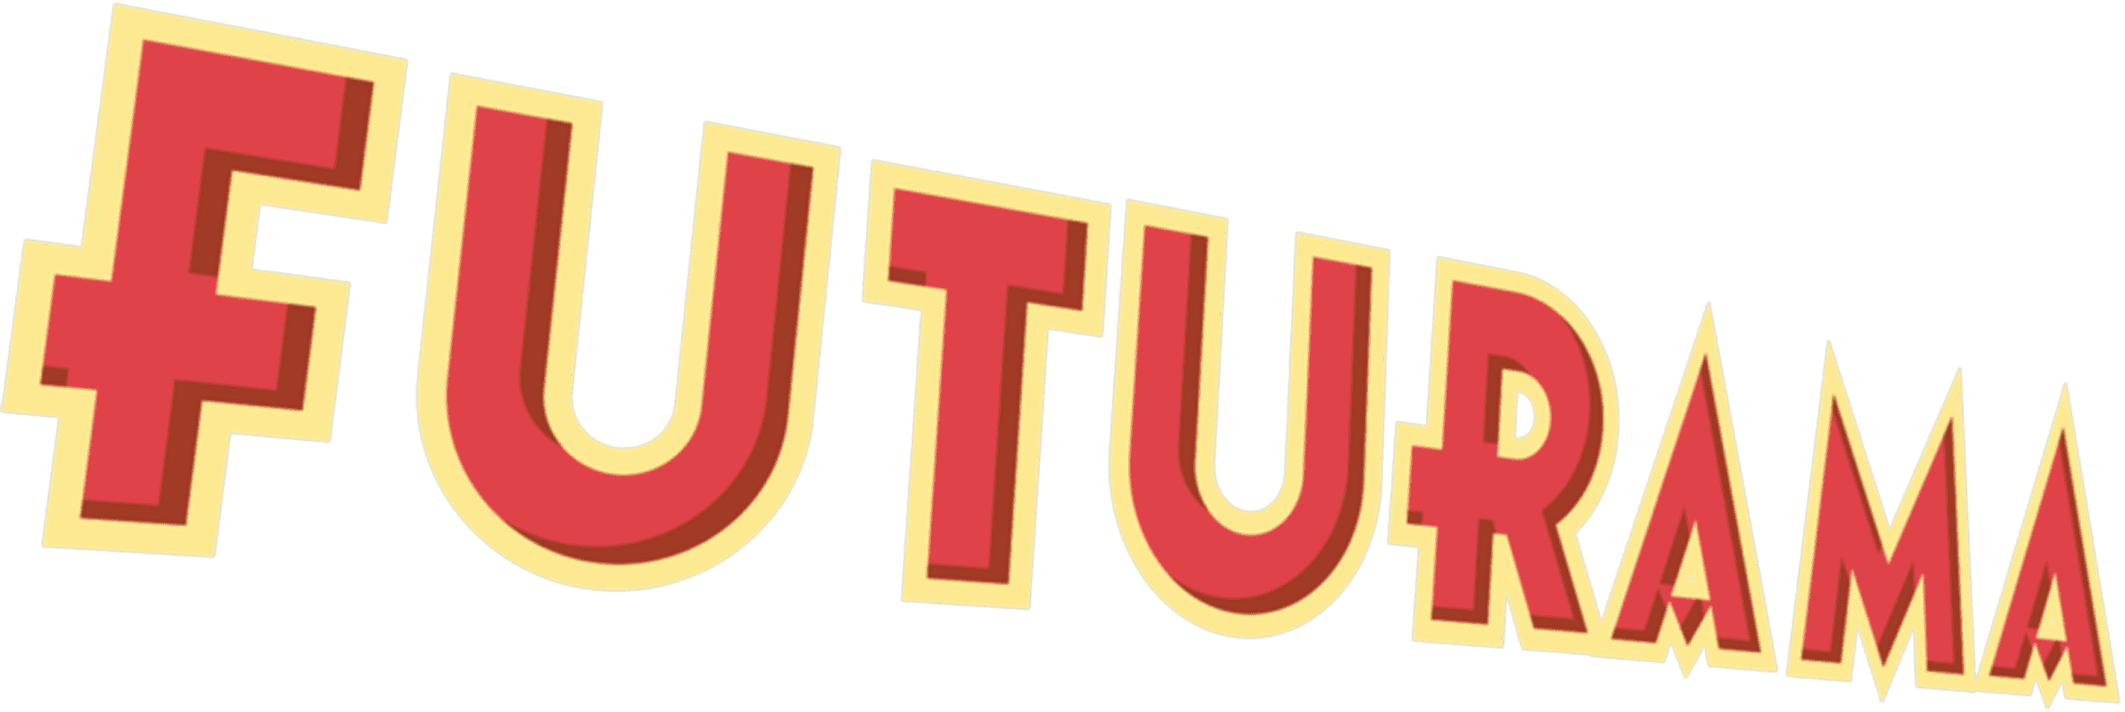 Futuramas logo